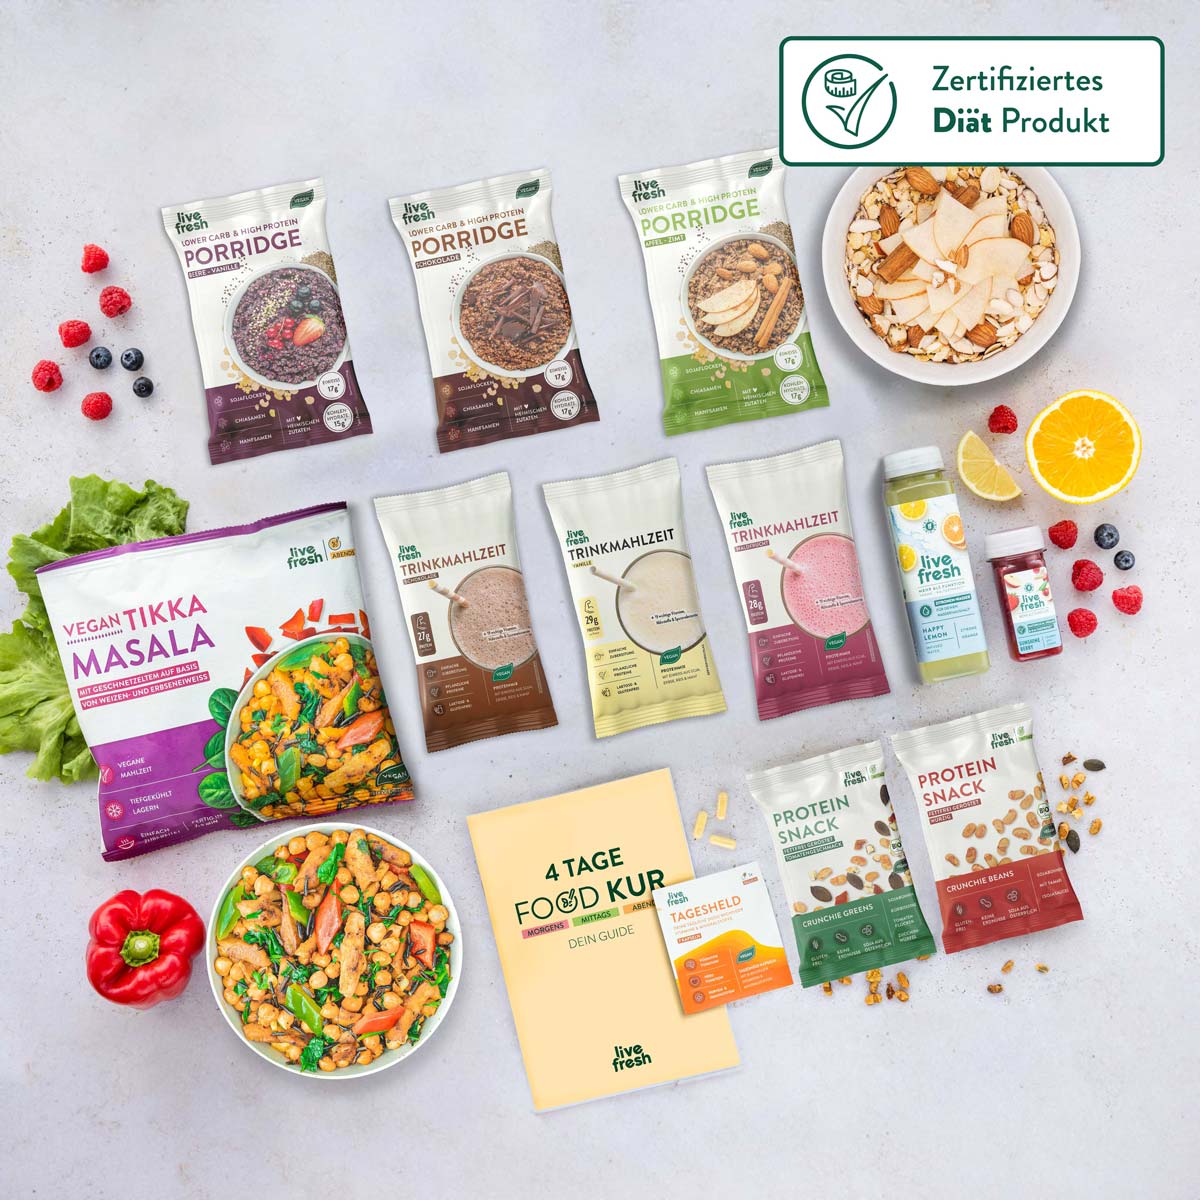 Diverse Auswahl an 'Live Fresh' Produkten, darunter Vegan Tikka Masala, verschiedene Porridge-Packungen und Trinkmahlzeiten auf hellem Untergrund, ideal für eine ausgewogene Ernährung.